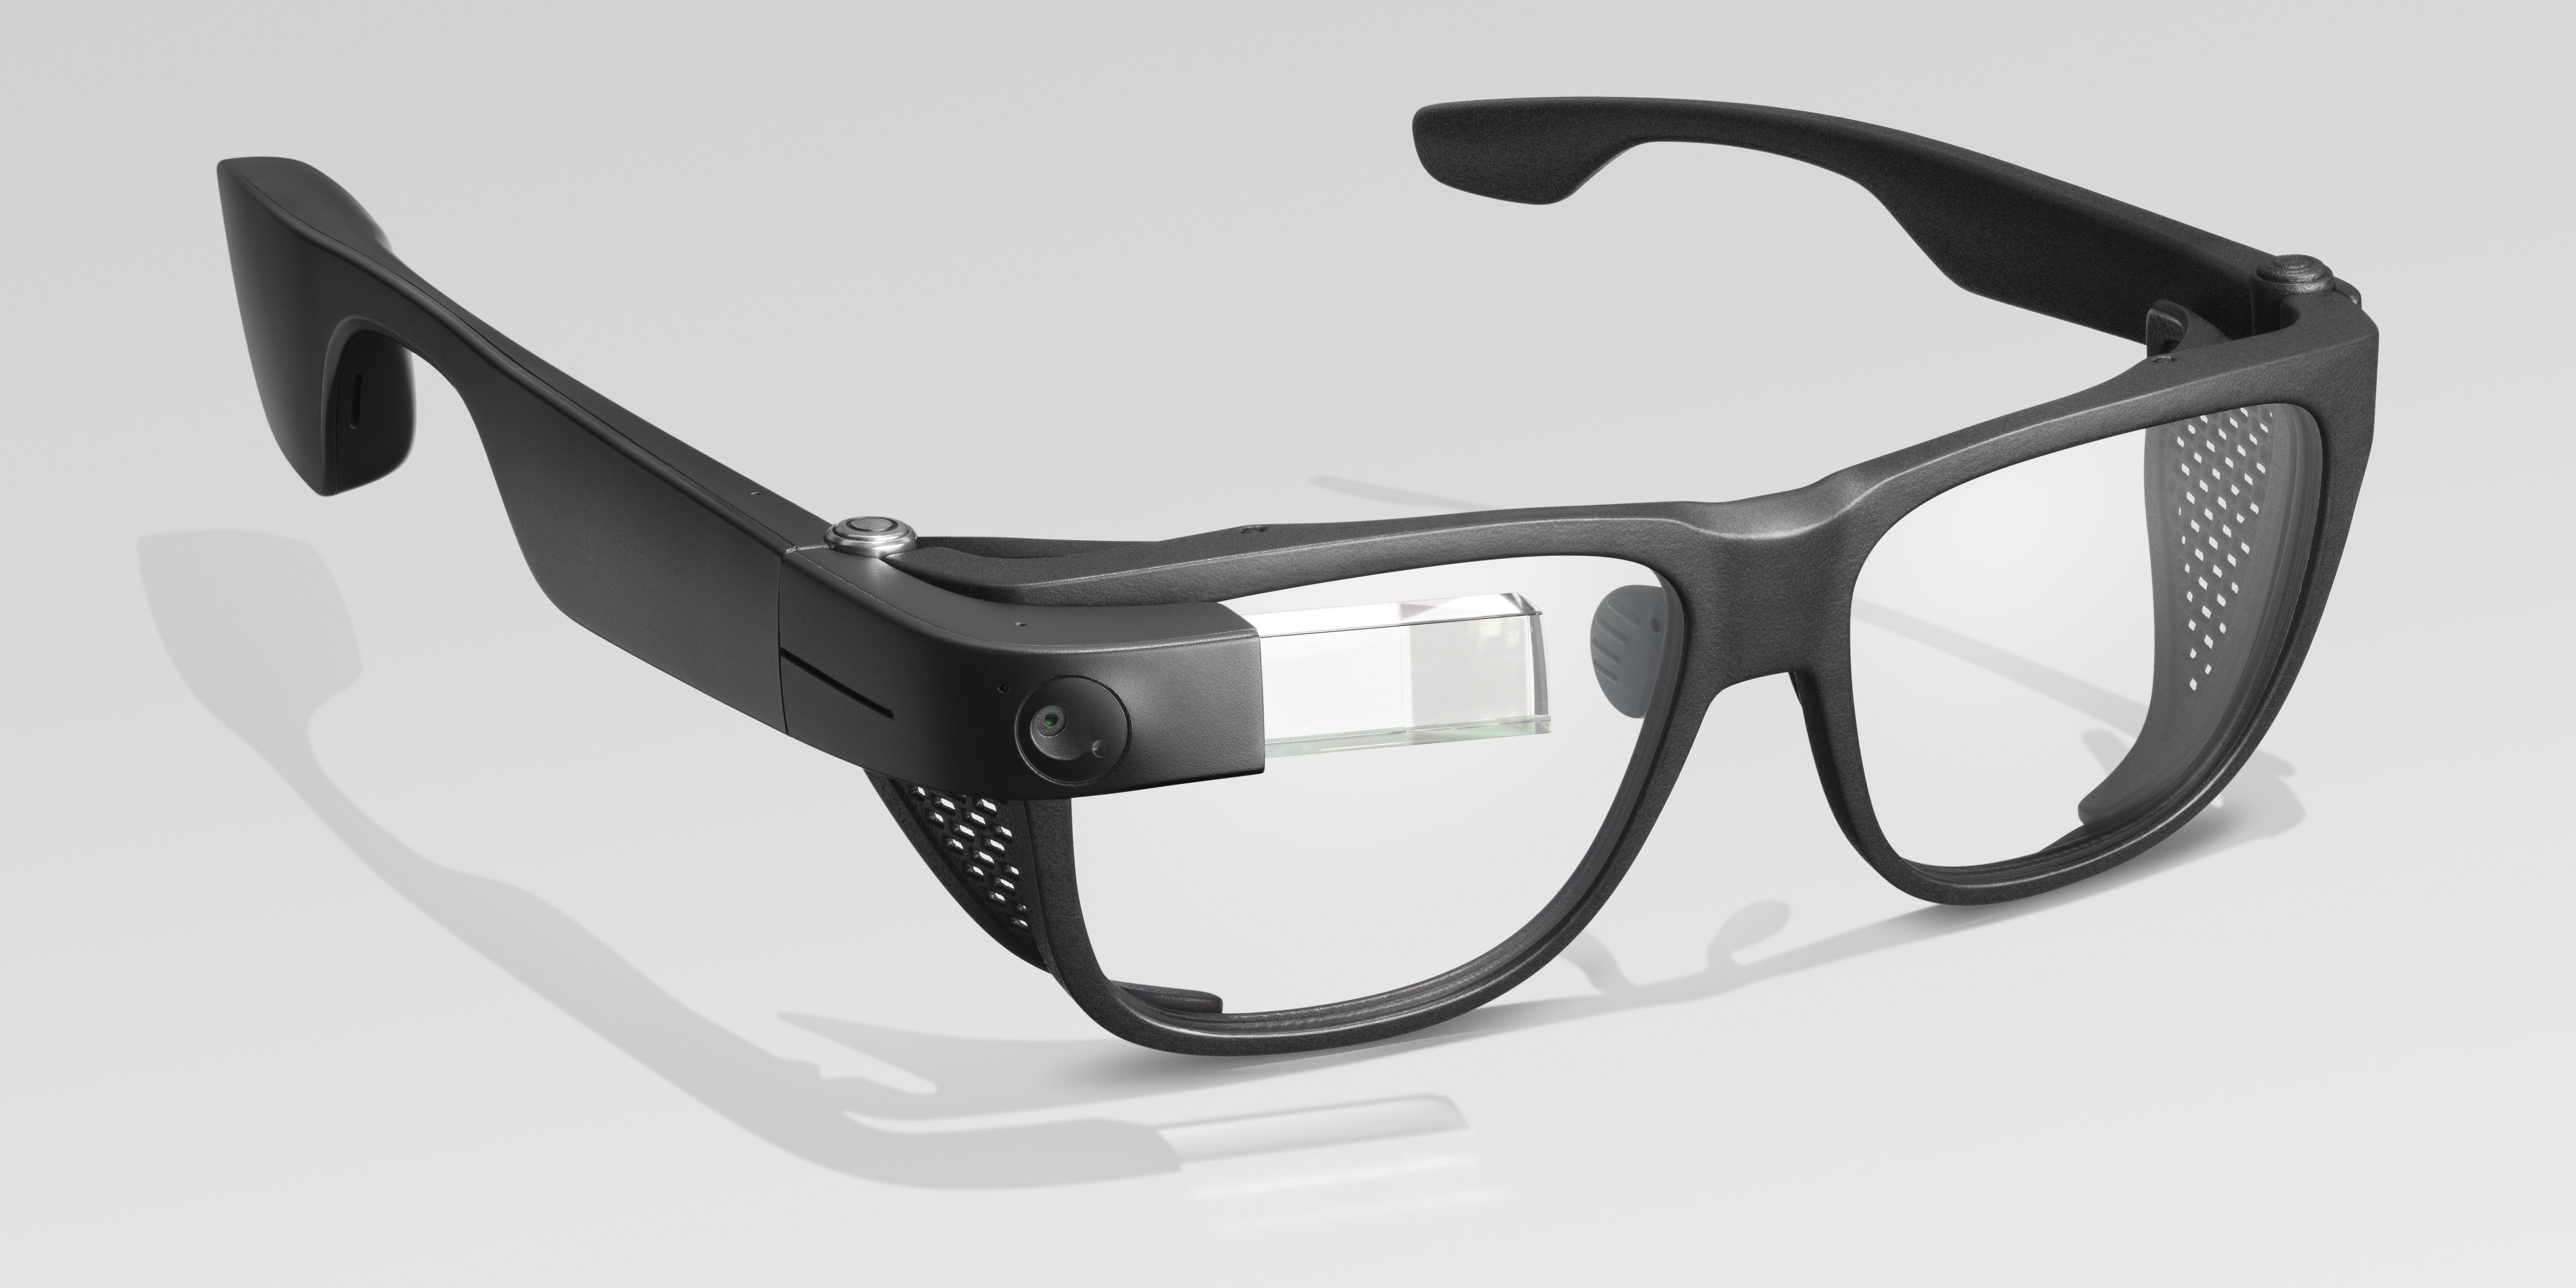 Google presentó sus primeros anteojos inteligentes en 2013 y luego siguió creando nuevos modelos. (Foto: especial)